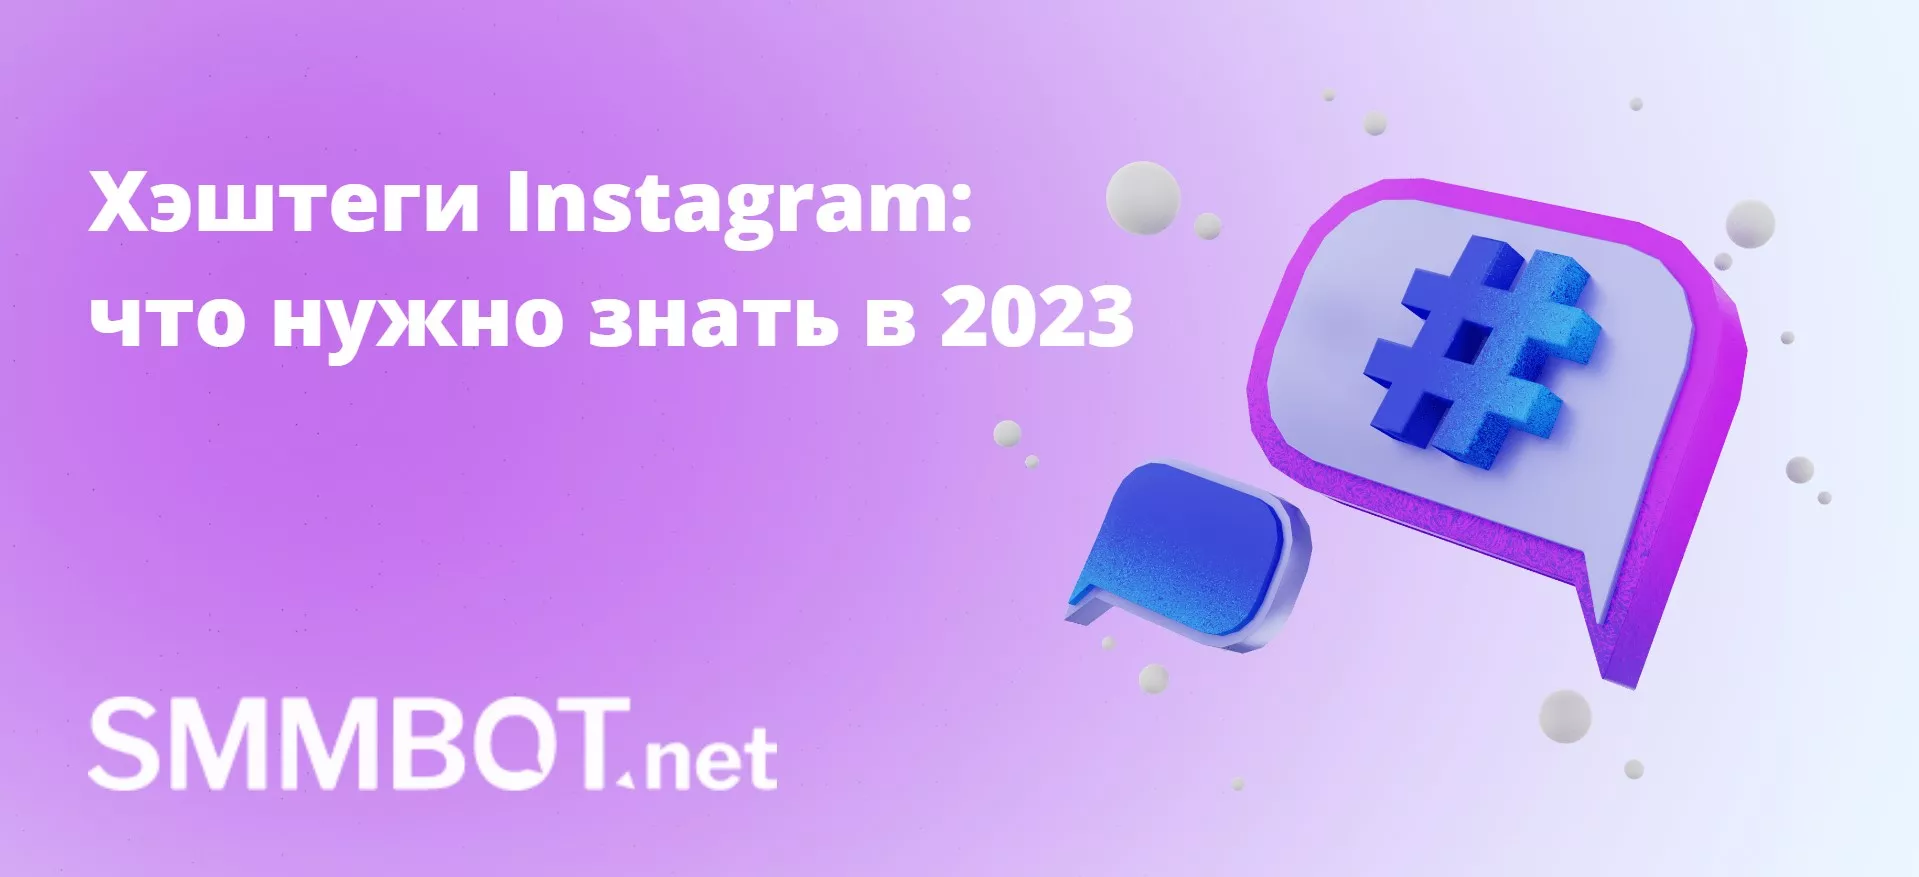 Хэштеги Instagram: что нужно знать в 2023